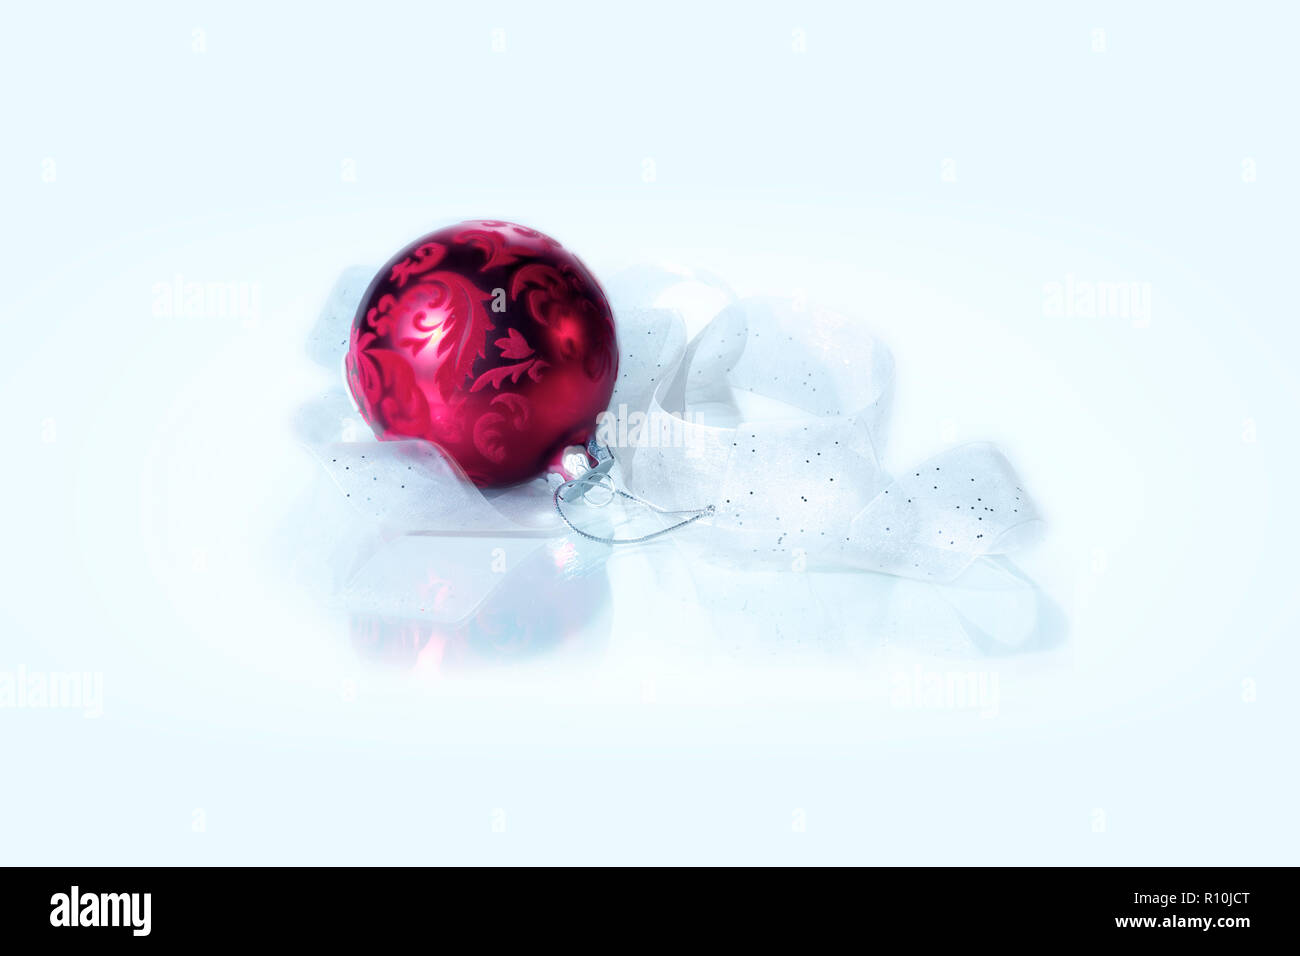 Rojo profundo de adornos de Navidad con cinta blanca pura en el centro de la imagen, espacio para copiar Foto de stock